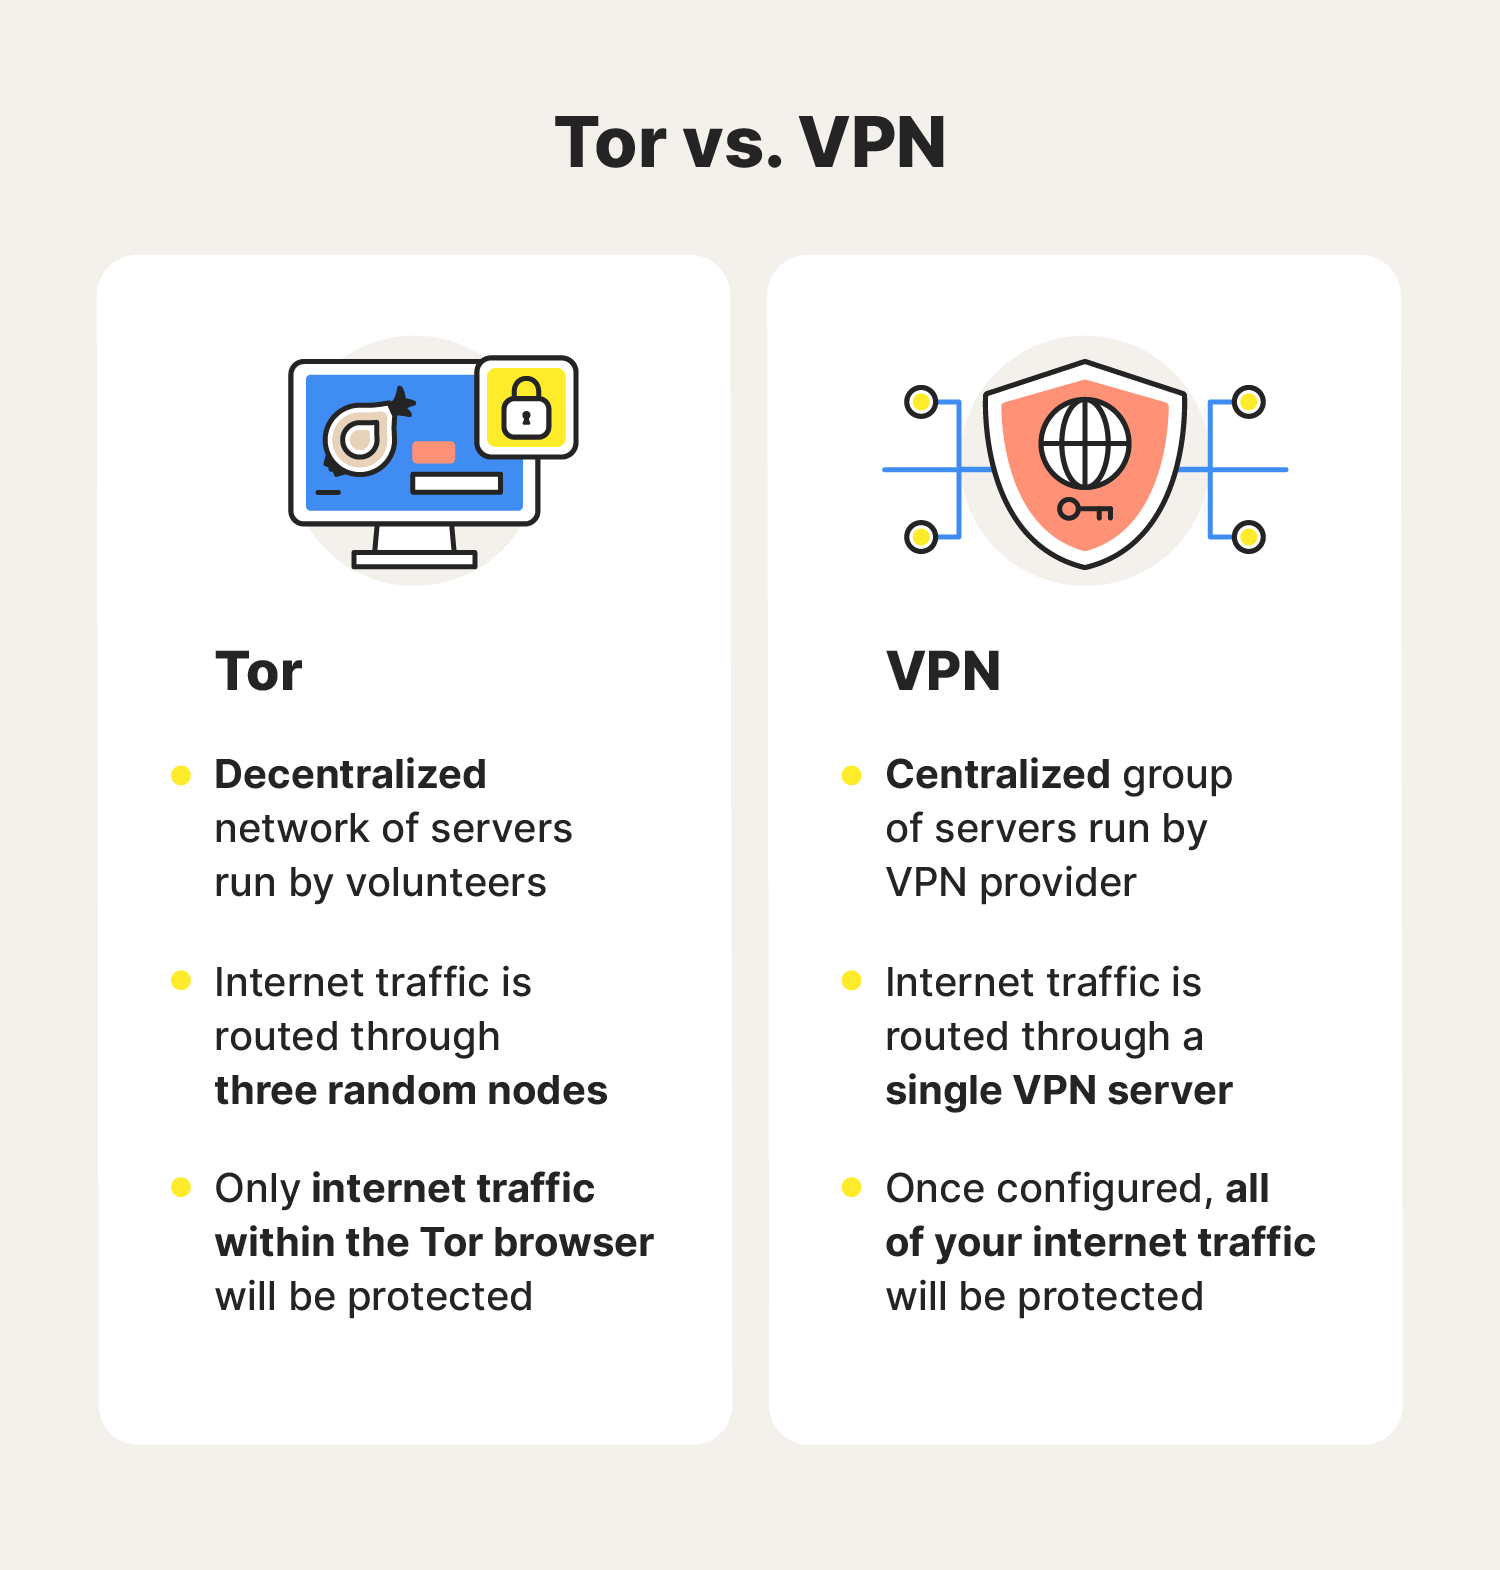 يعطل الرسم مقارنة بين TOR مقابل VPN ، مع تسليط الضوء على الاختلافات بين الاثنين